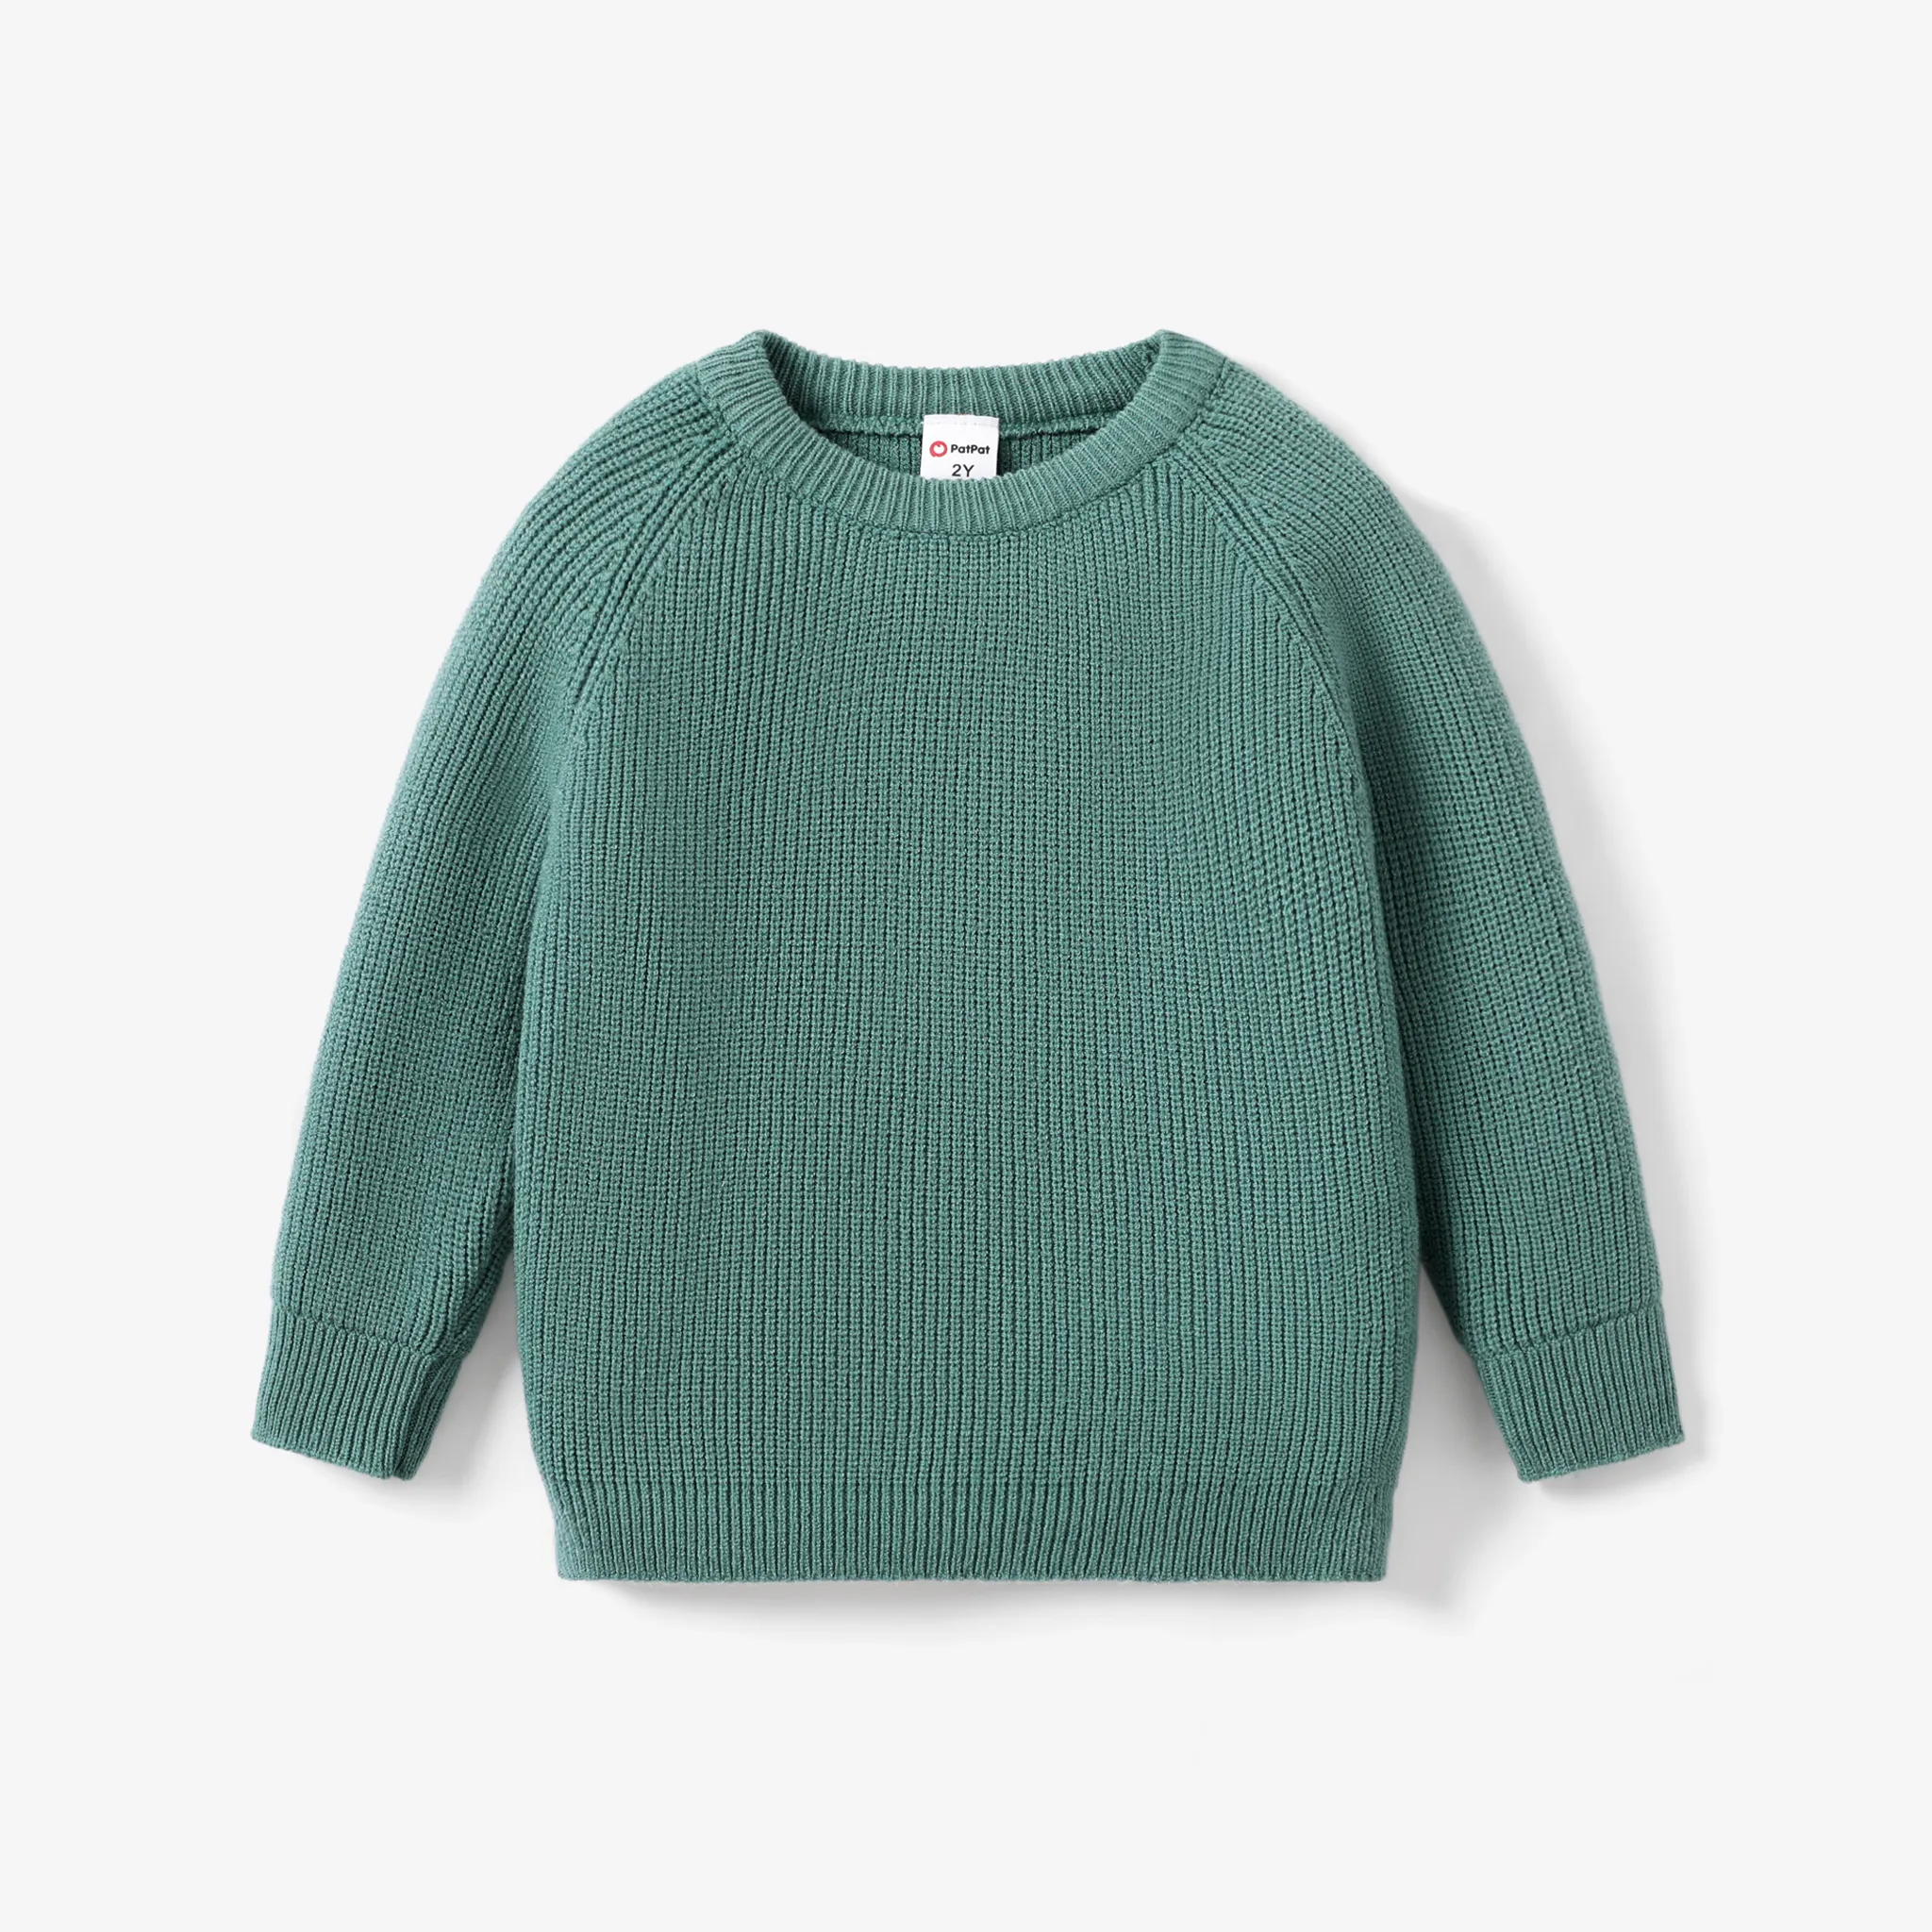 Toddler/Kid Girl/Boy Solid Inserted Shoulder Design Sweater